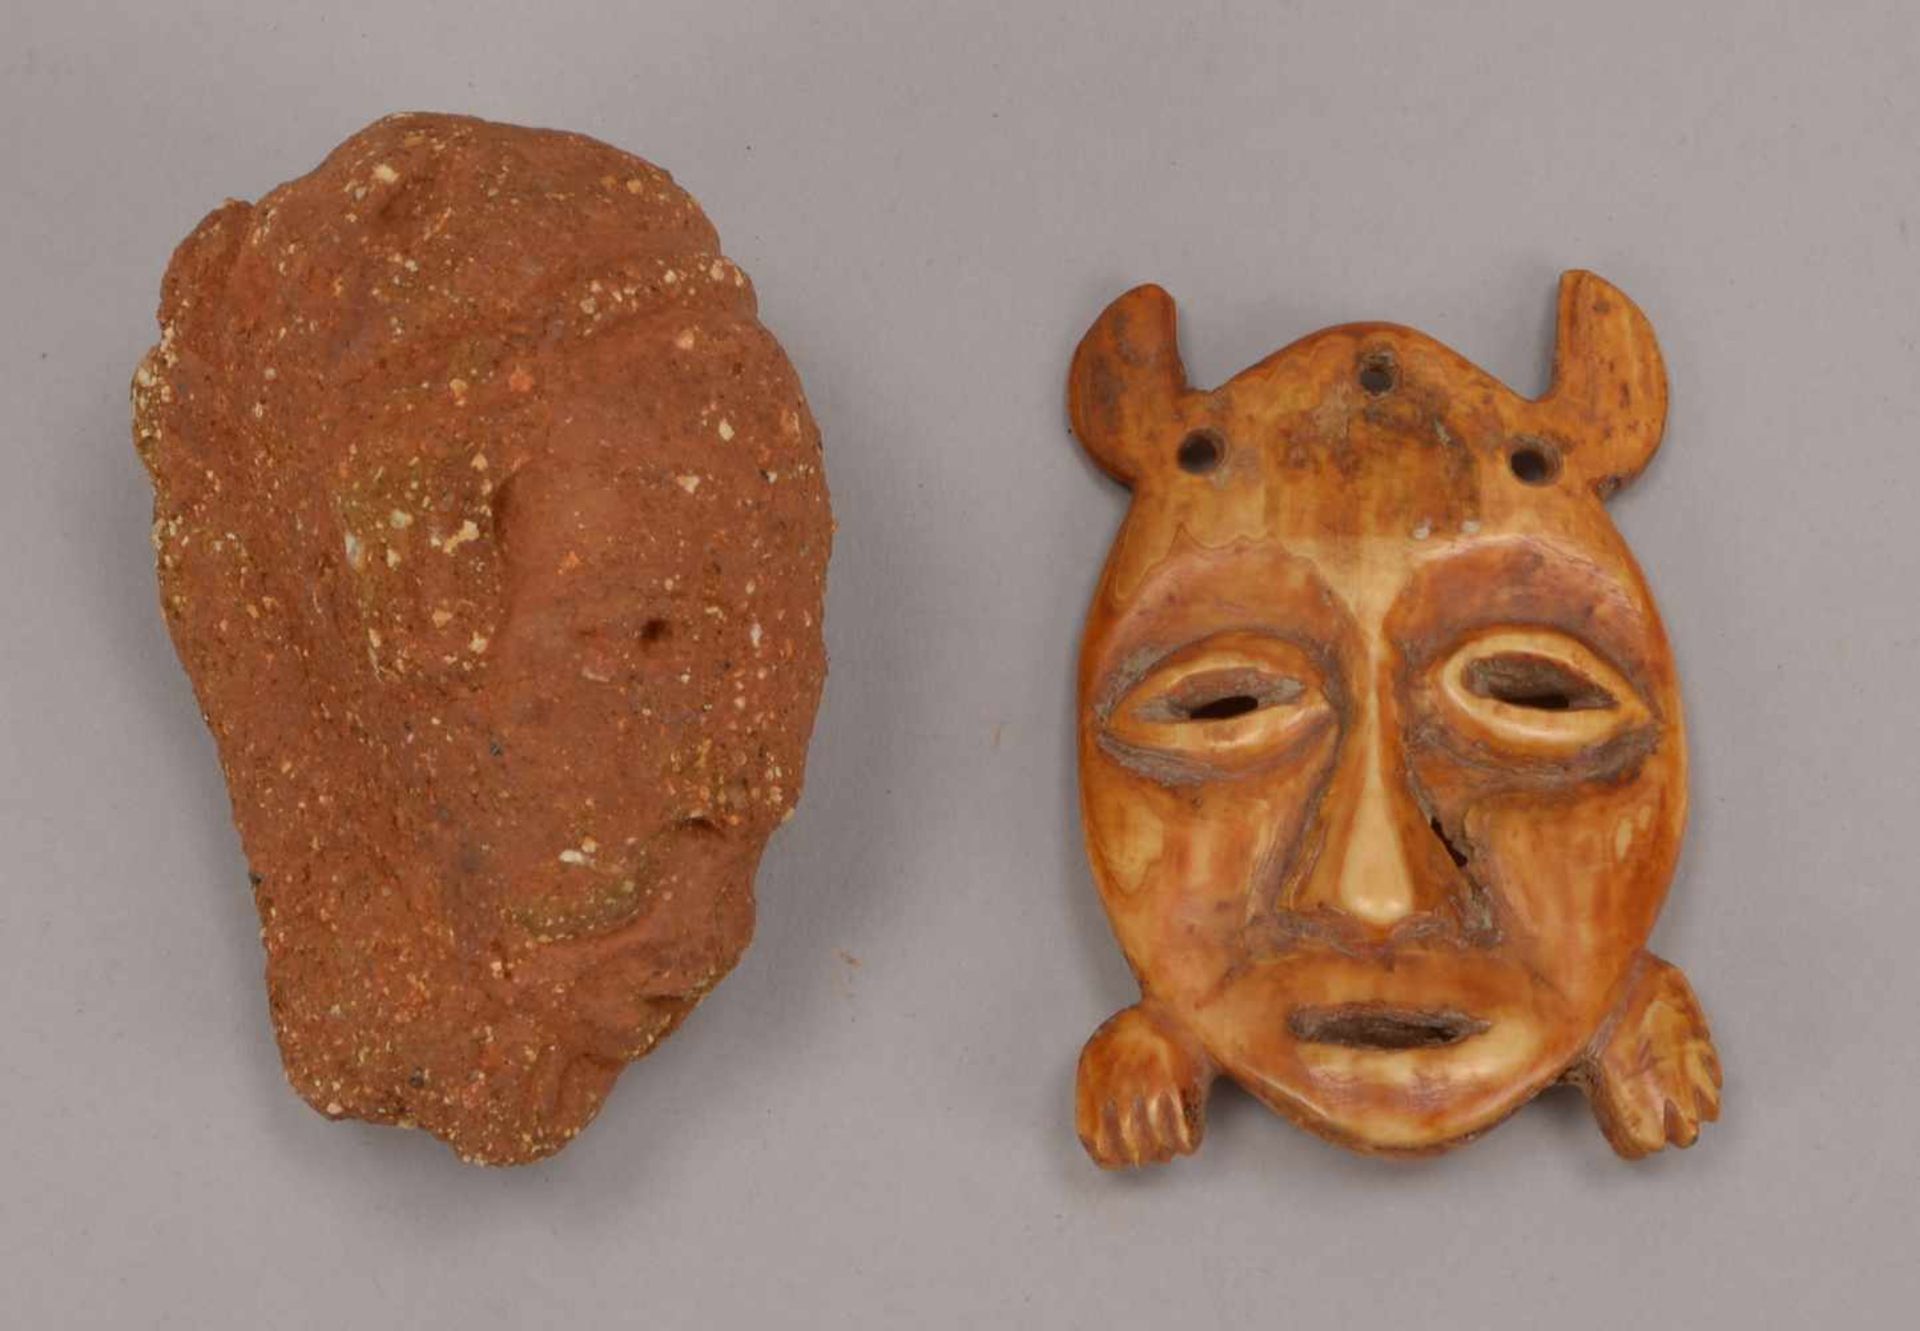 Terrakotta-Kopf (Alter vermutlich ca. 2.000 Jahre), Nok-Kultur/Nigeria und Passport-Maske, Lega/